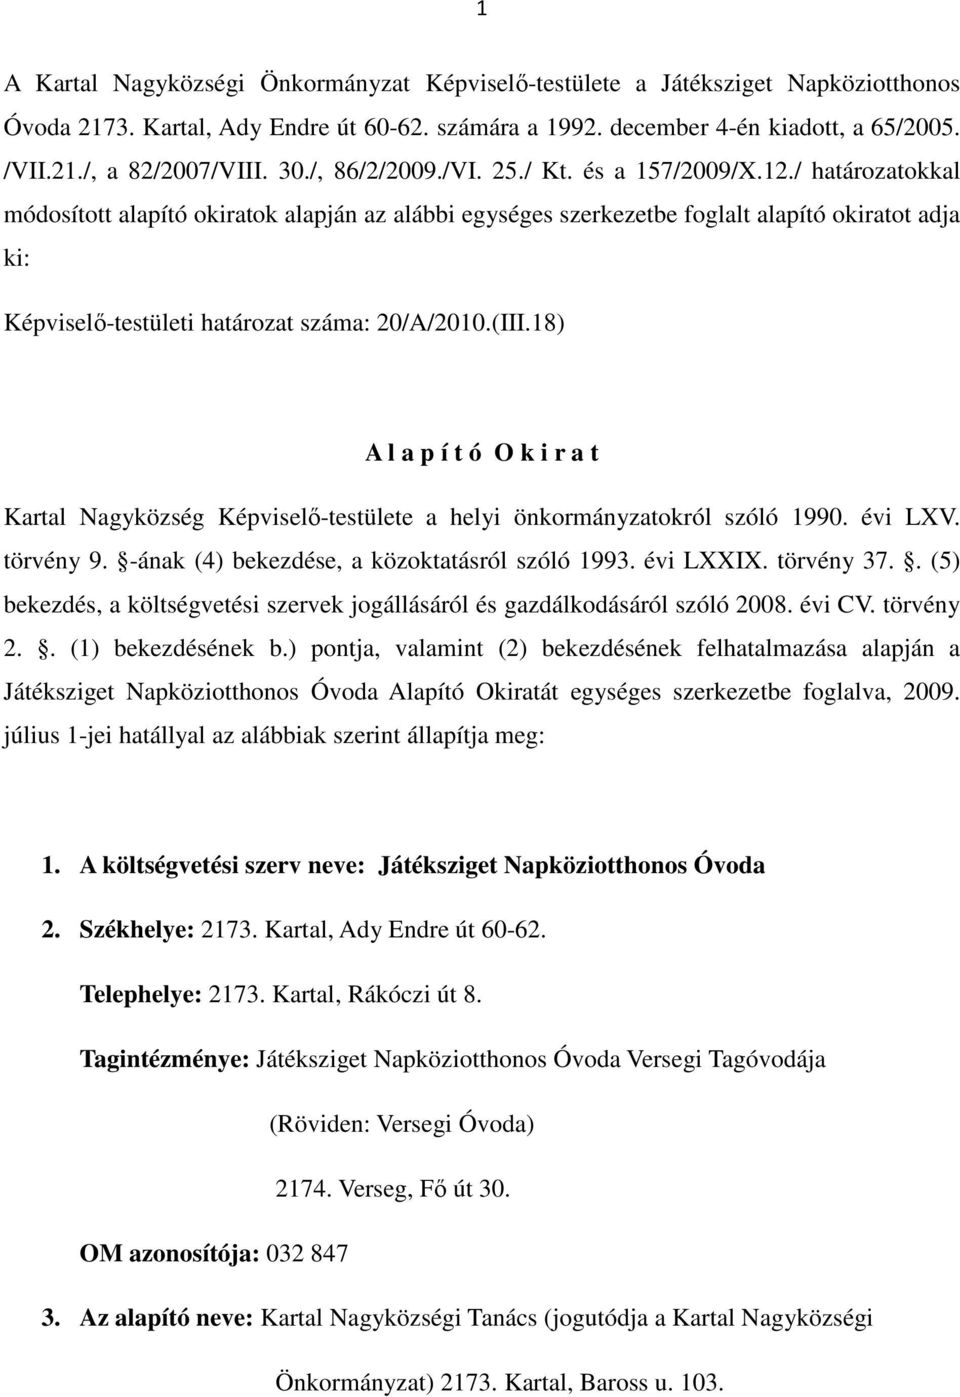 / határozatokkal módosított alapító okiratok alapján az alábbi egységes szerkezetbe foglalt alapító okiratot adja ki: Képviselı-testületi határozat száma: 20/A/2010.(III.